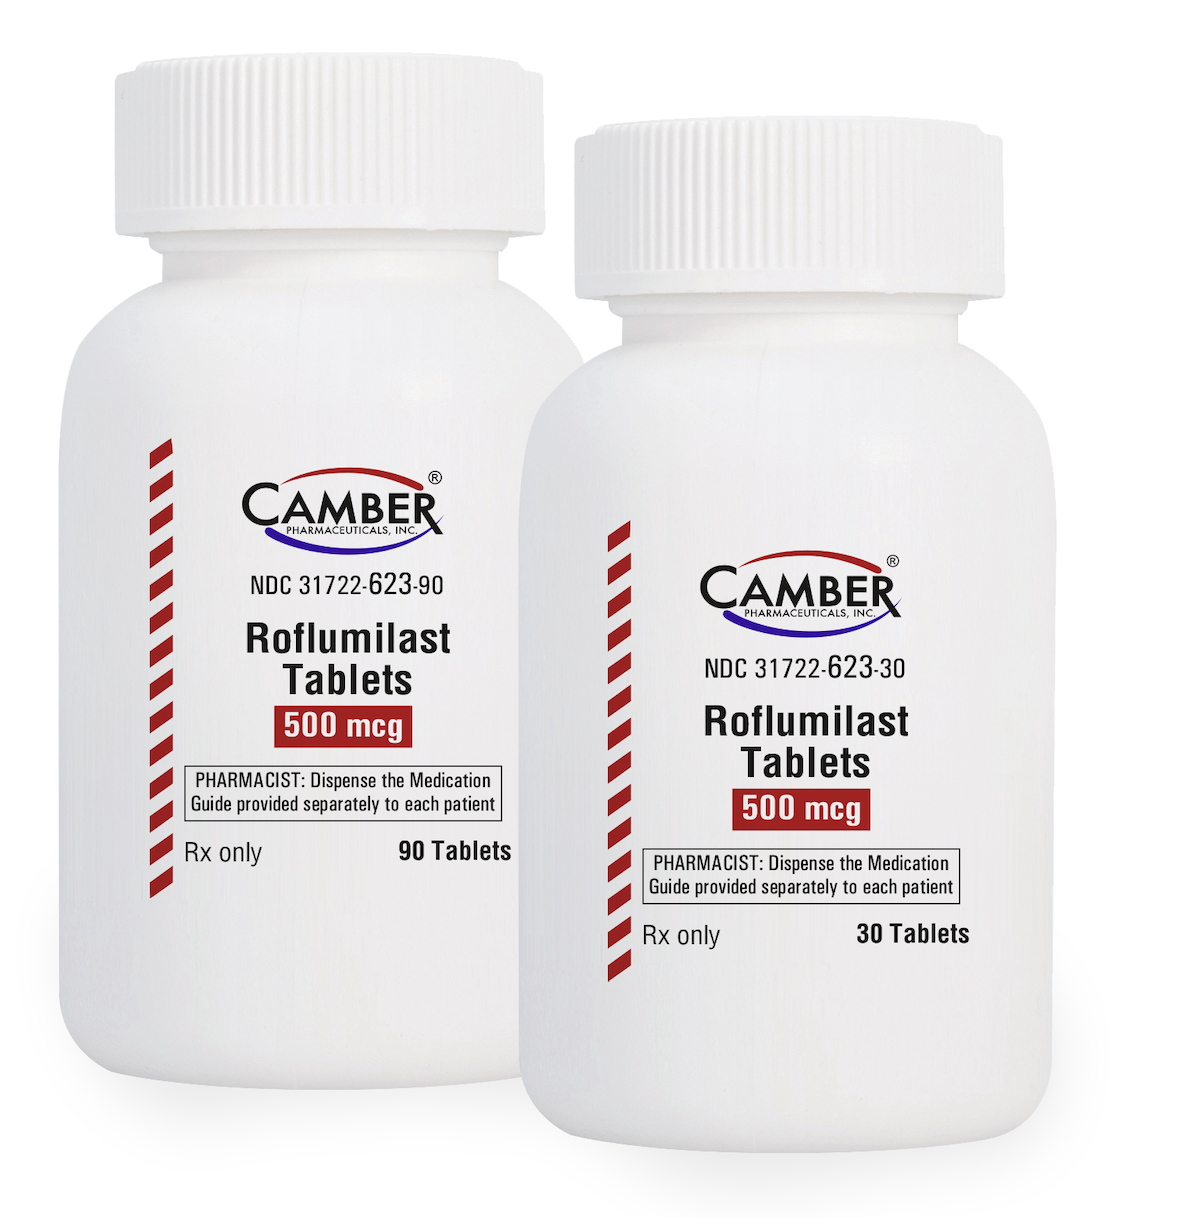 Camber Pharmaceuticals Launches Generic Daliresp